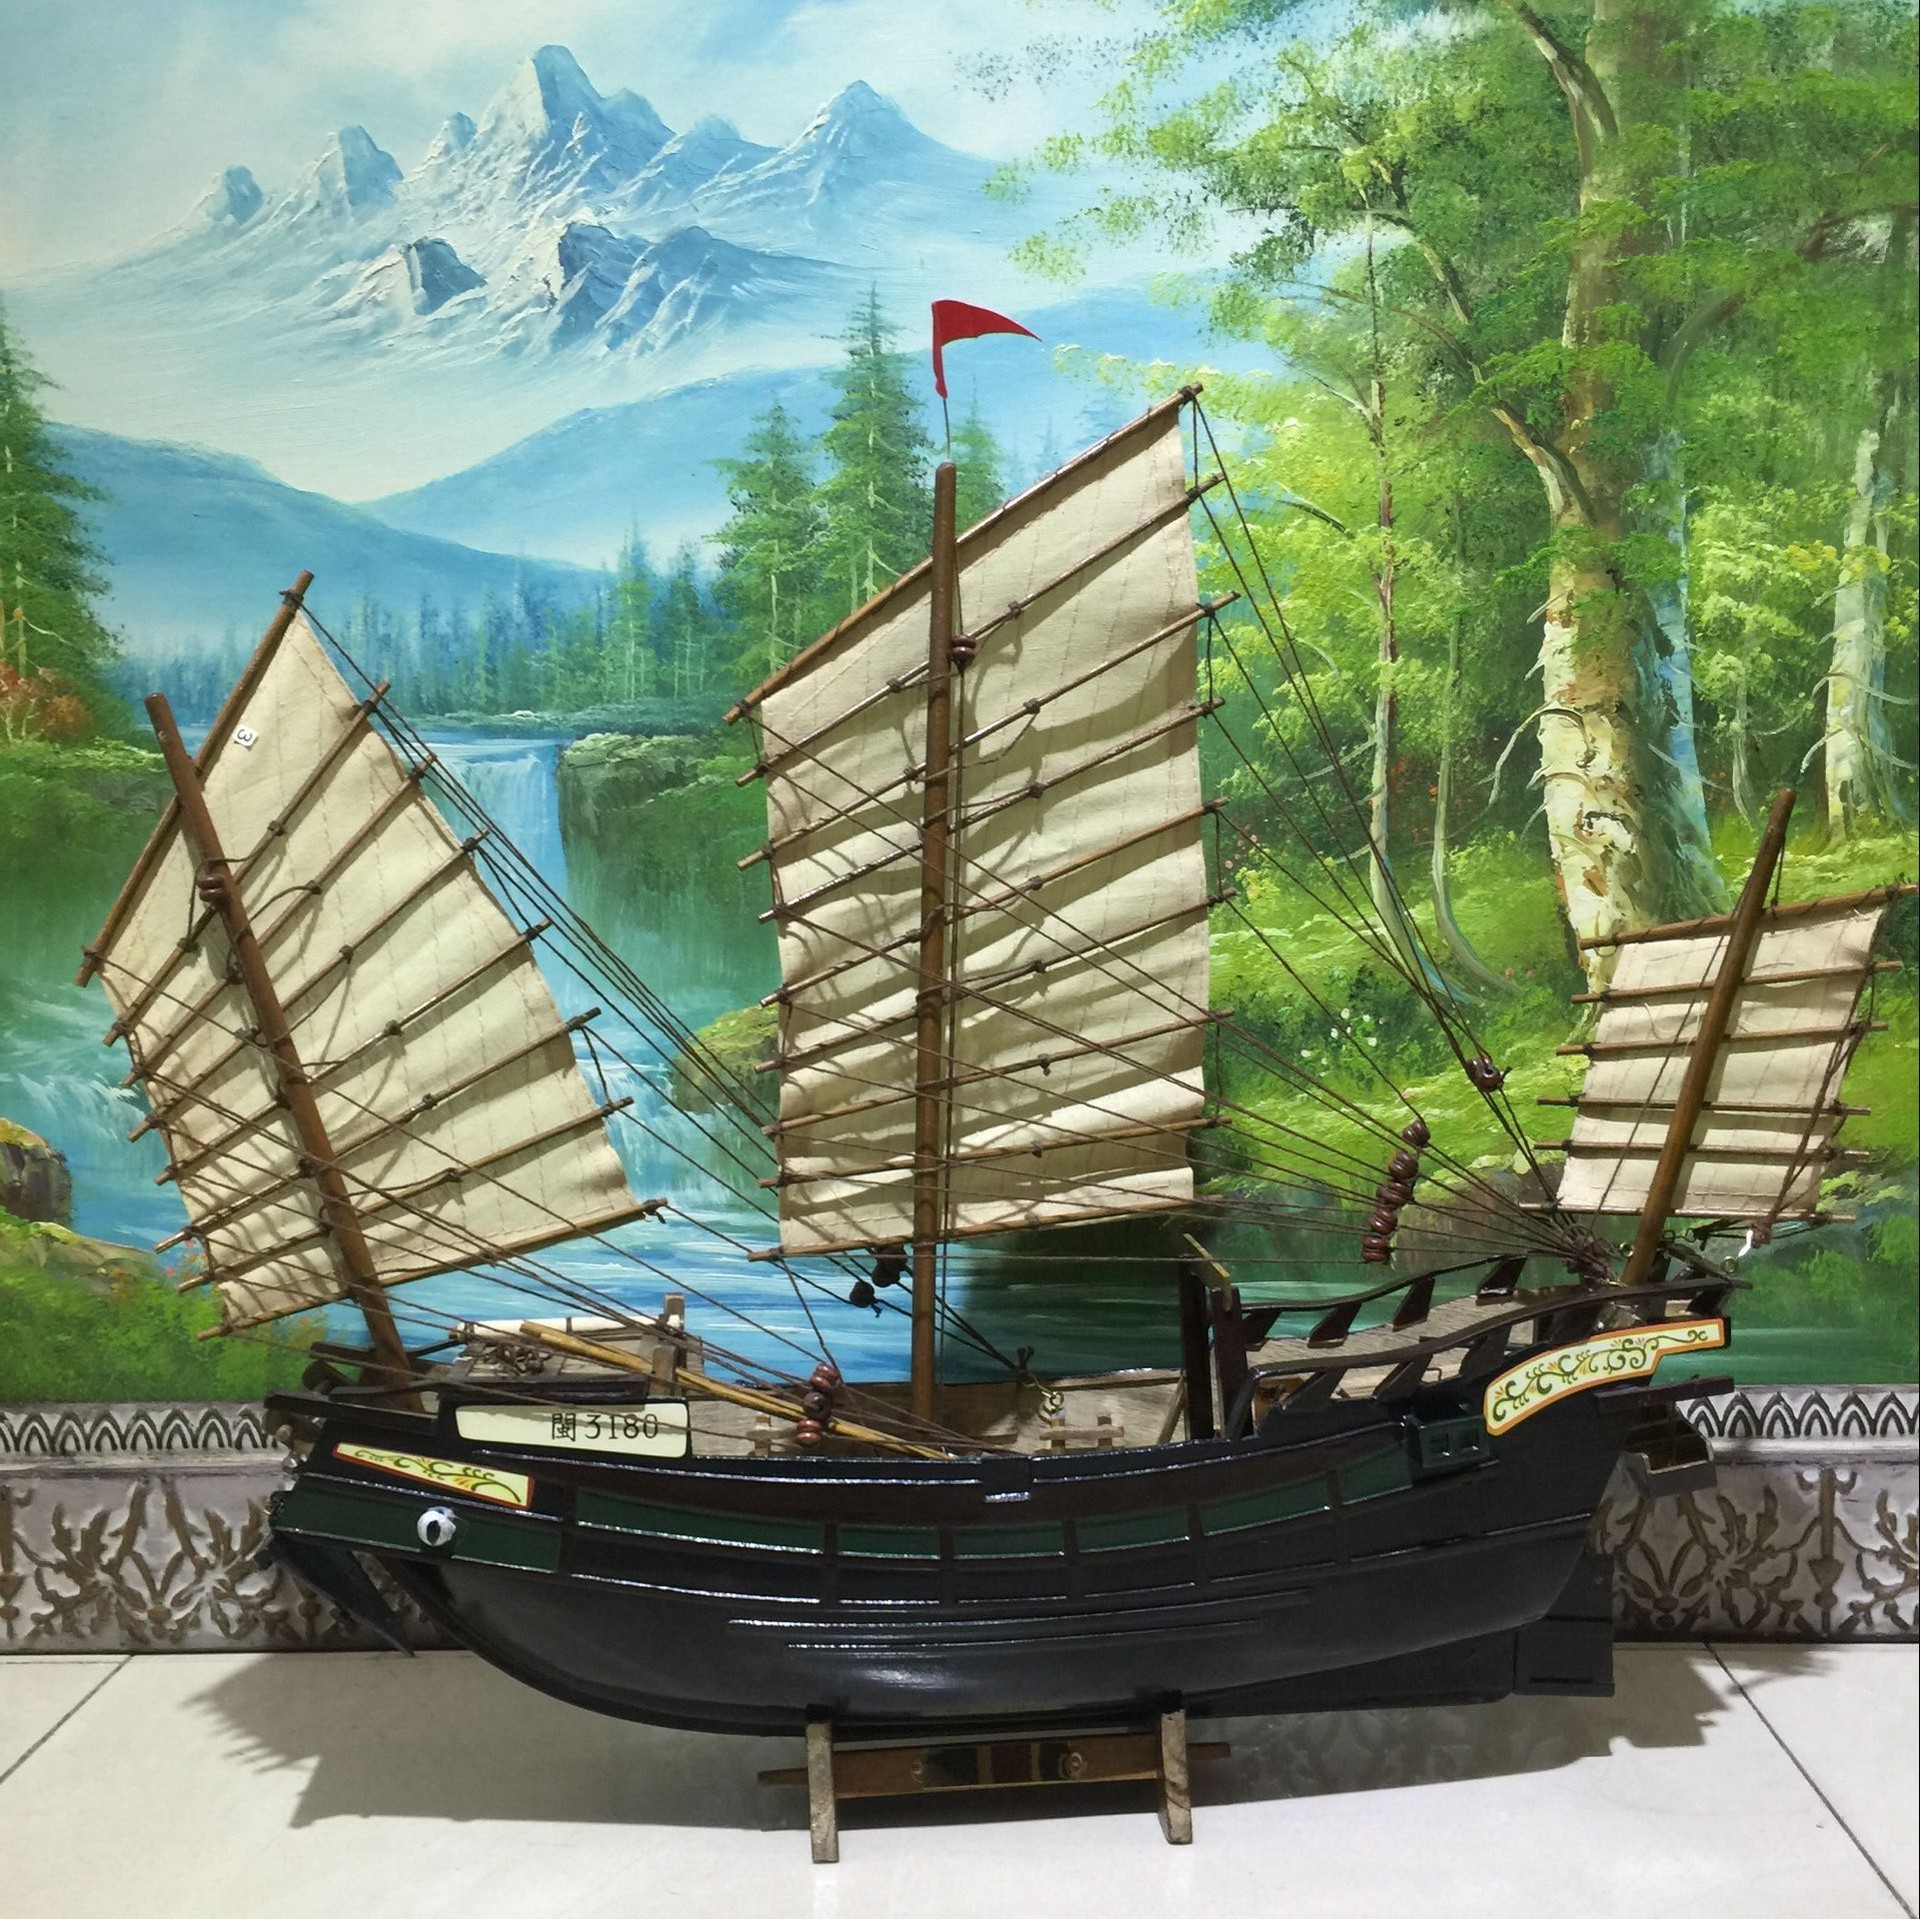 实木郑和宝船模型摆件福建古代帆船郑和下西洋中国名船礼品